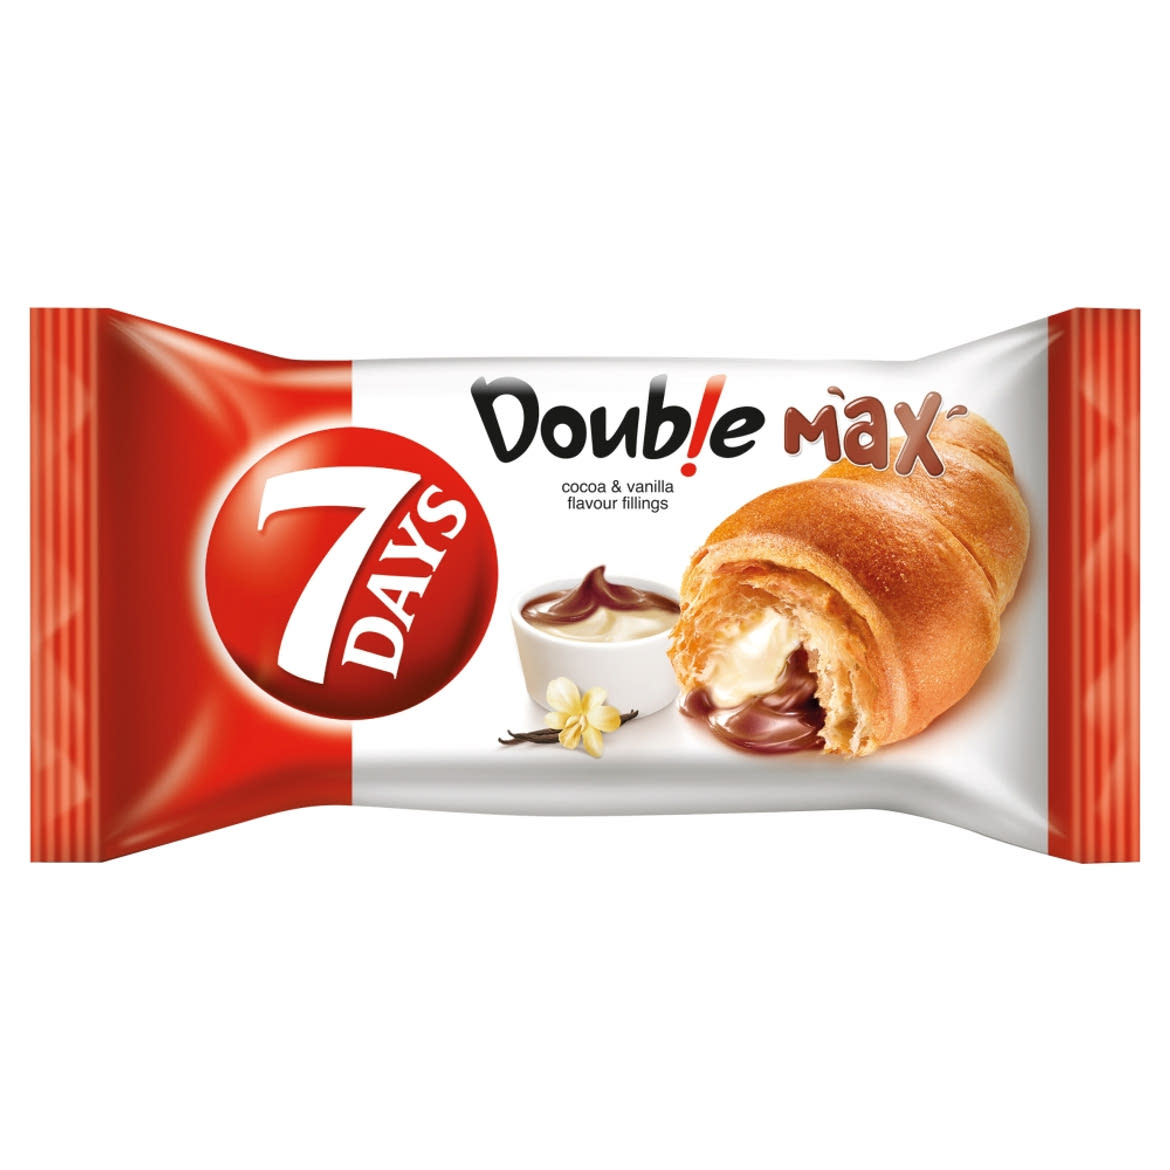 7DAYS Double Max croissant kakaós és vanília ízű töltelékkel